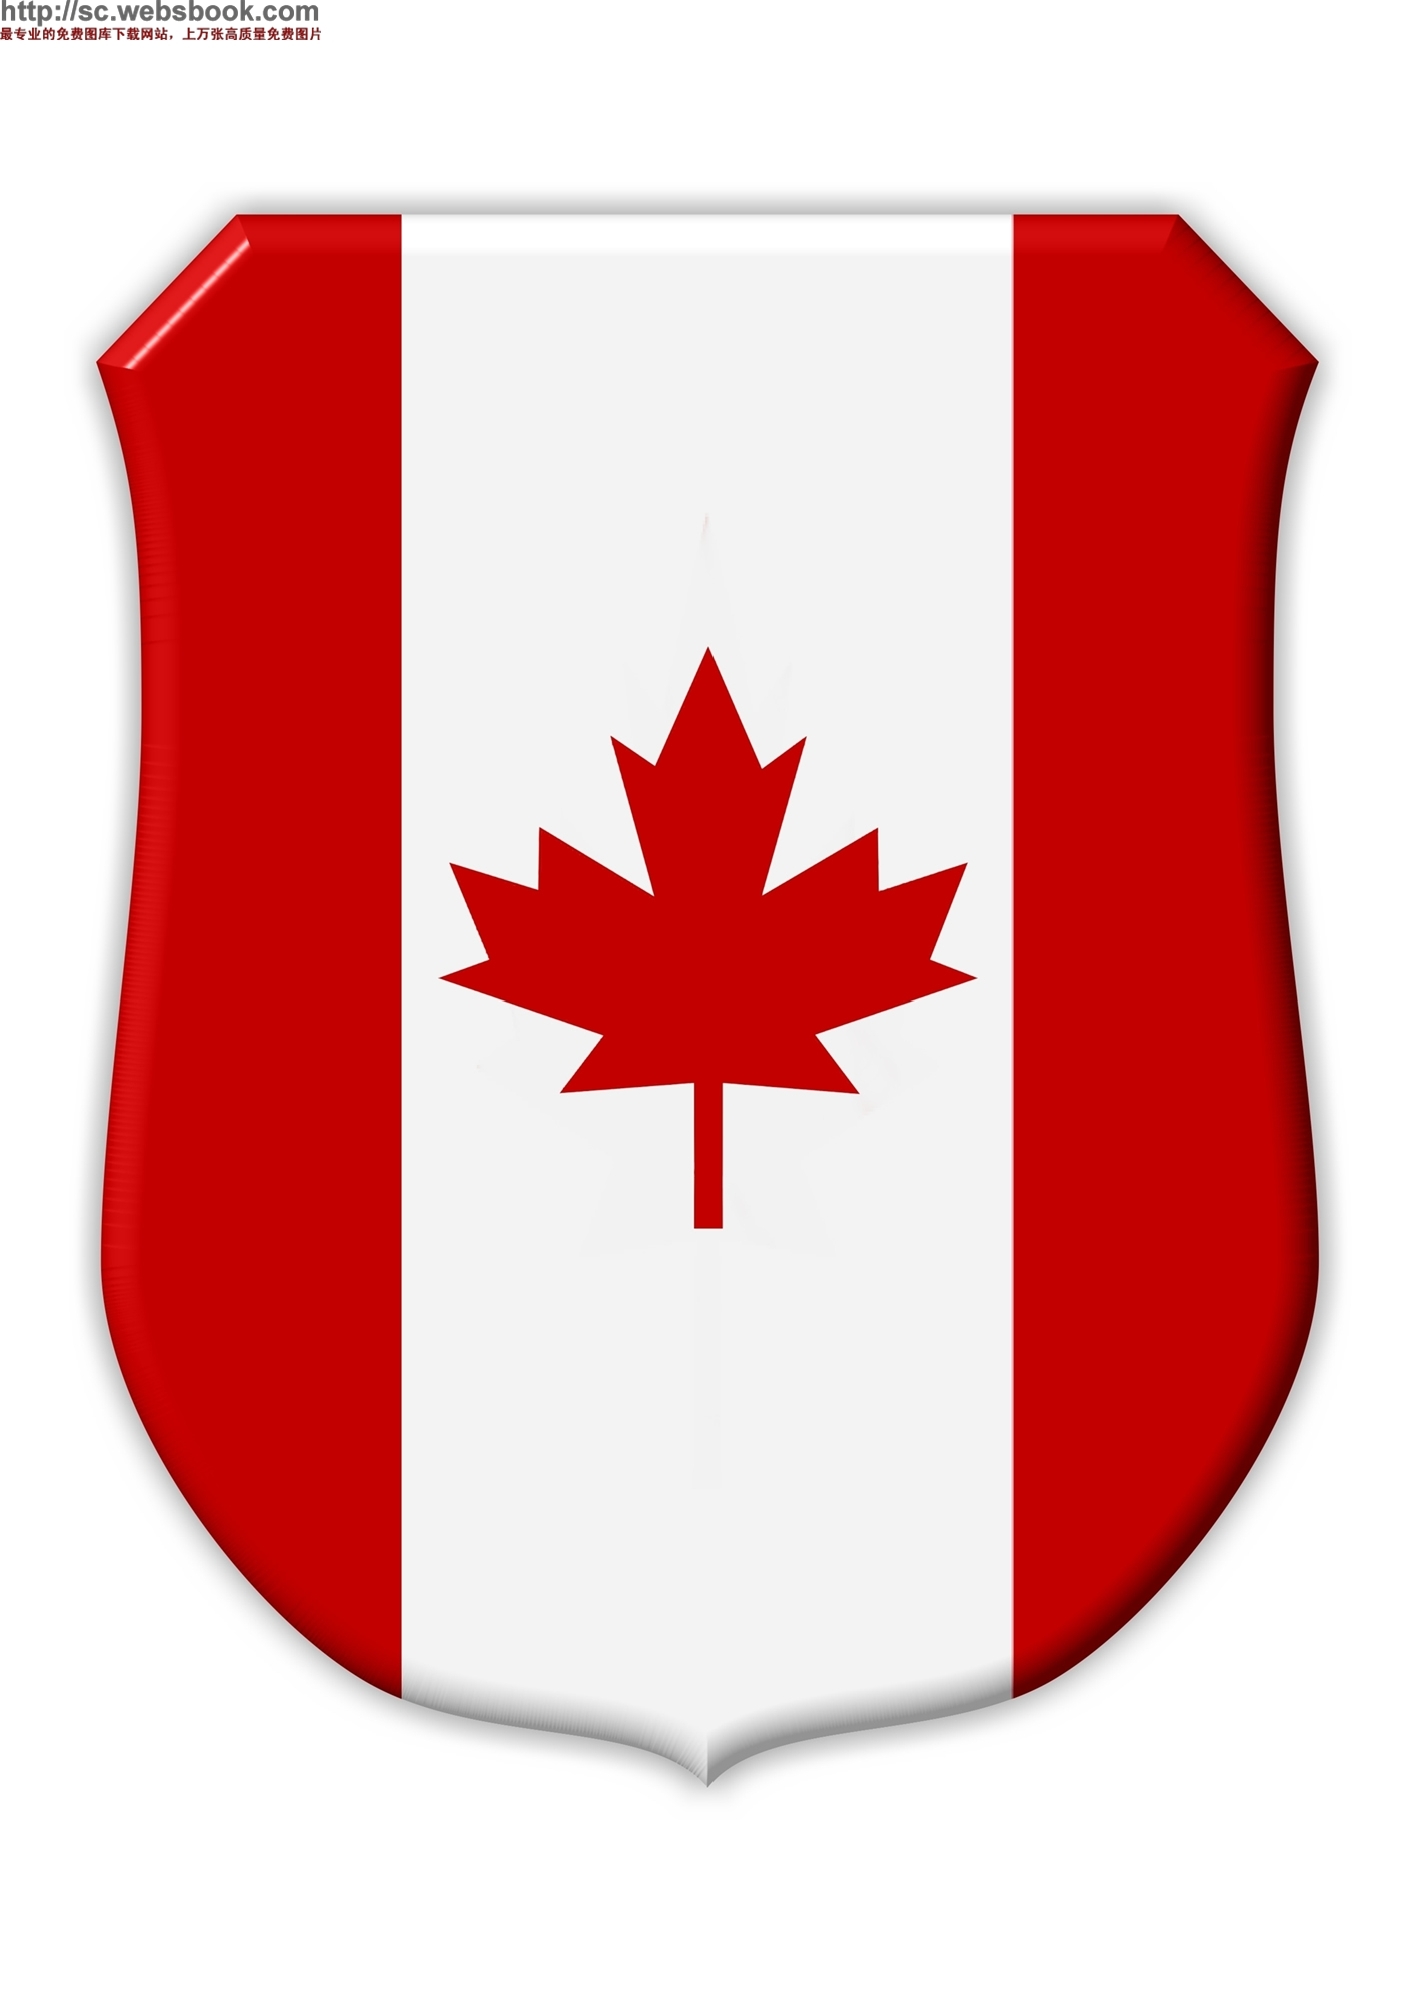 加拿大的国旗图片图片